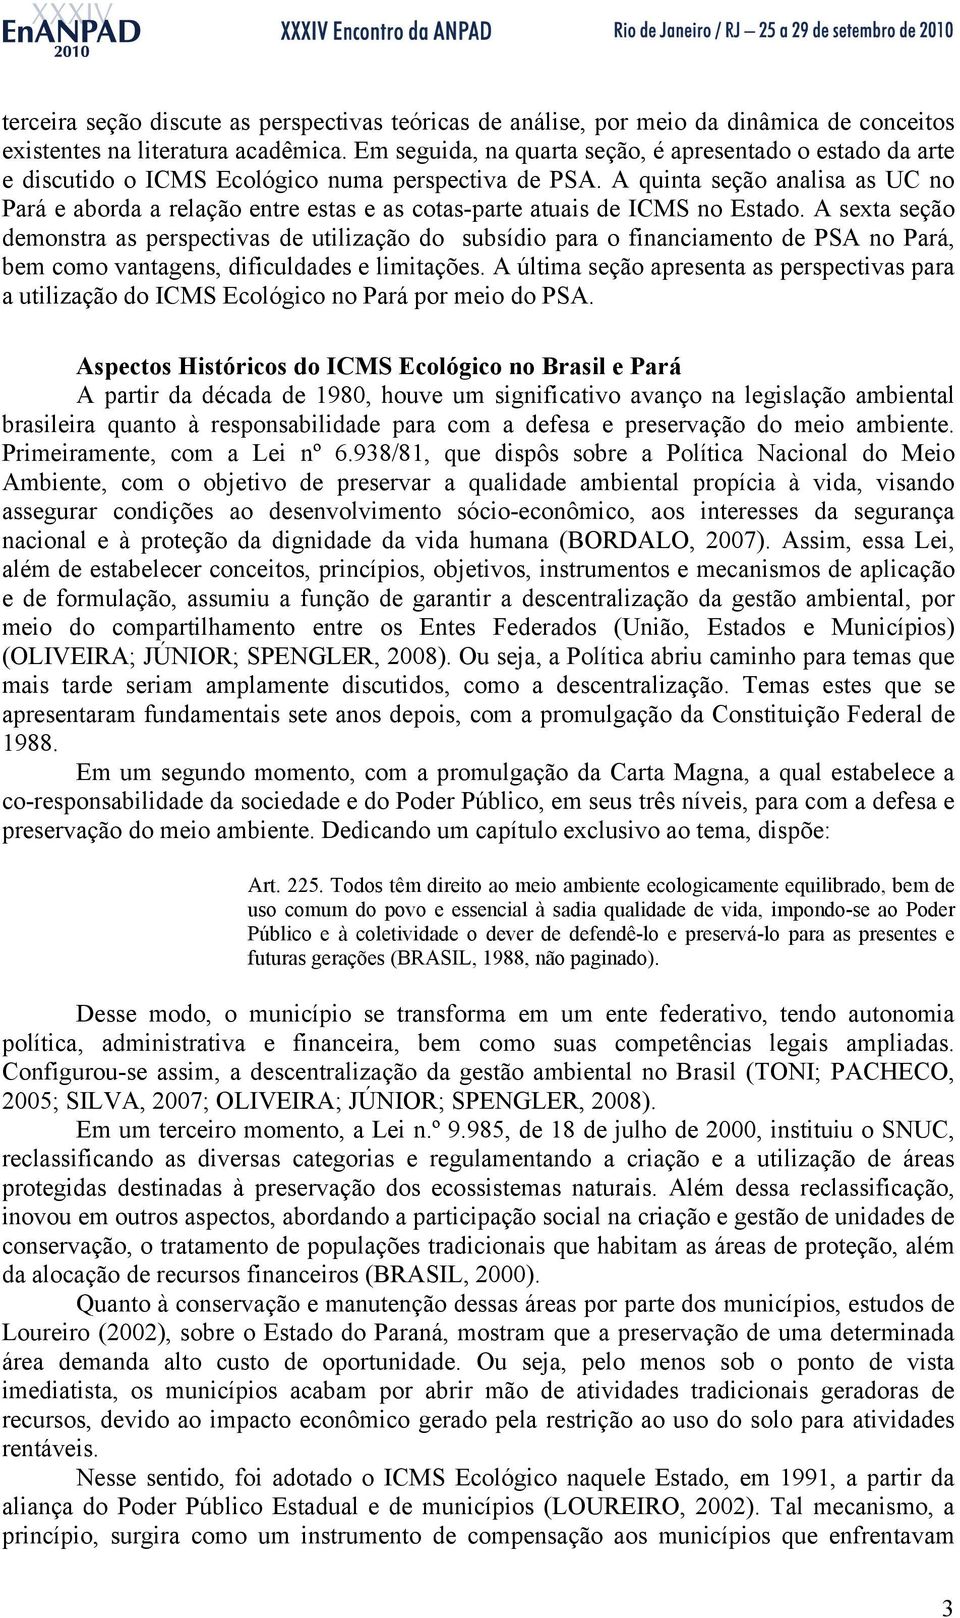 A quinta seção analisa as UC no Pará e aborda a relação entre estas e as cotas-parte atuais de ICMS no Estado.